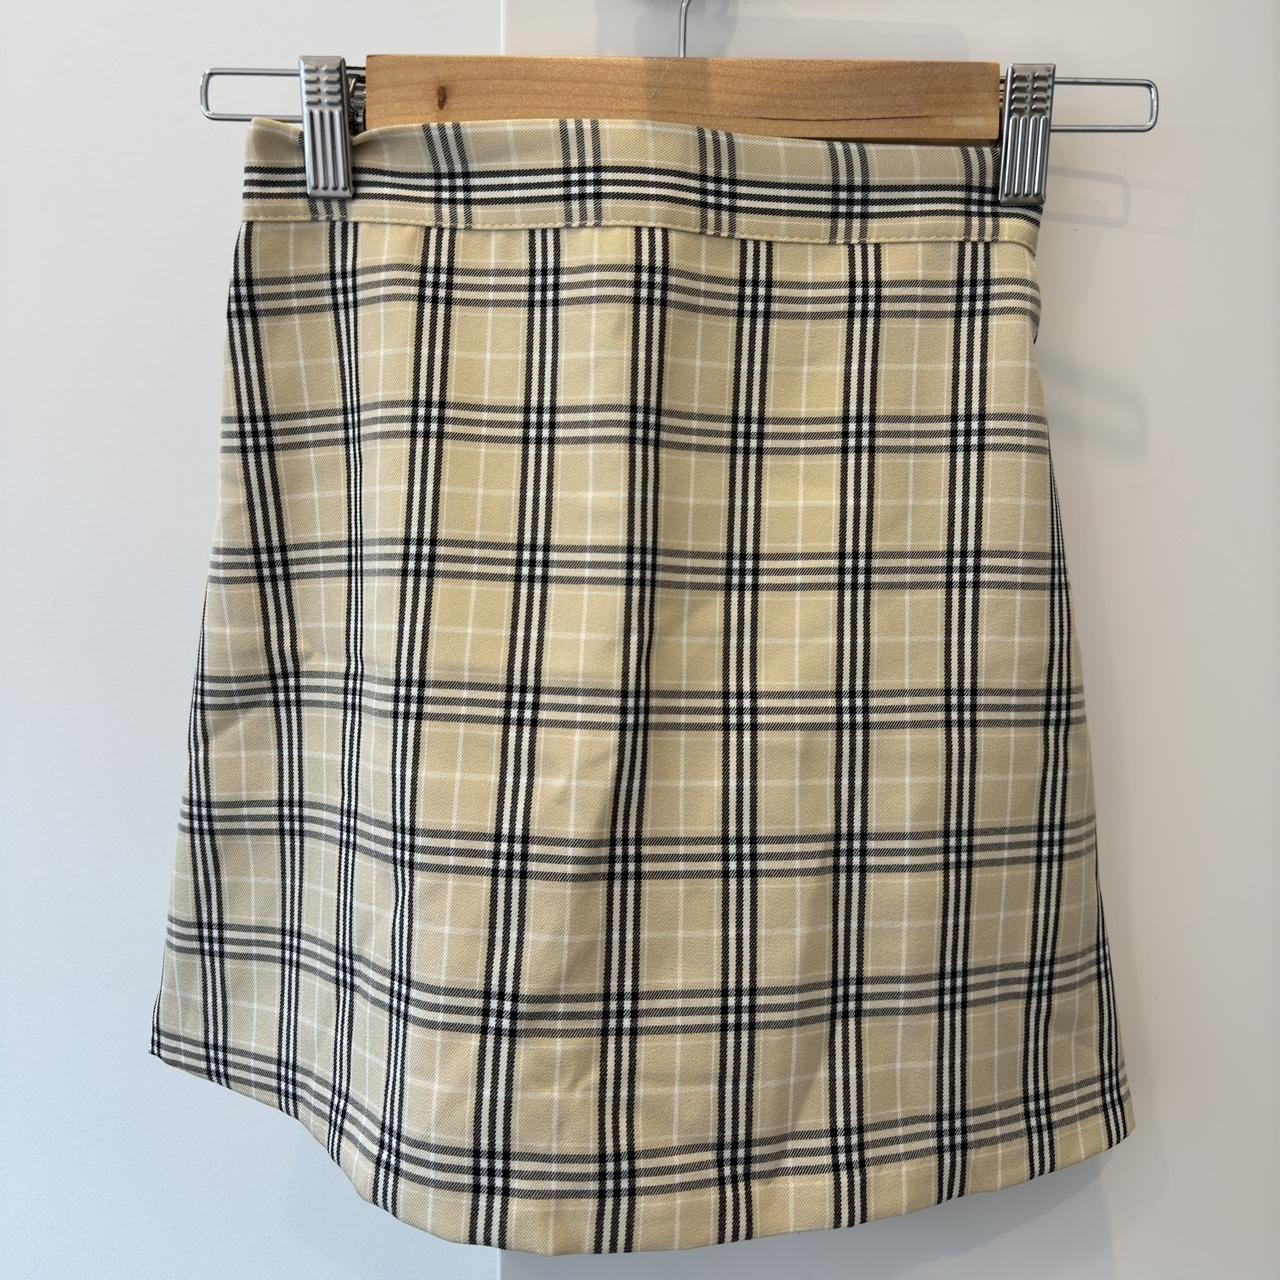 Tartan skirt Never worn Size XS - Depop